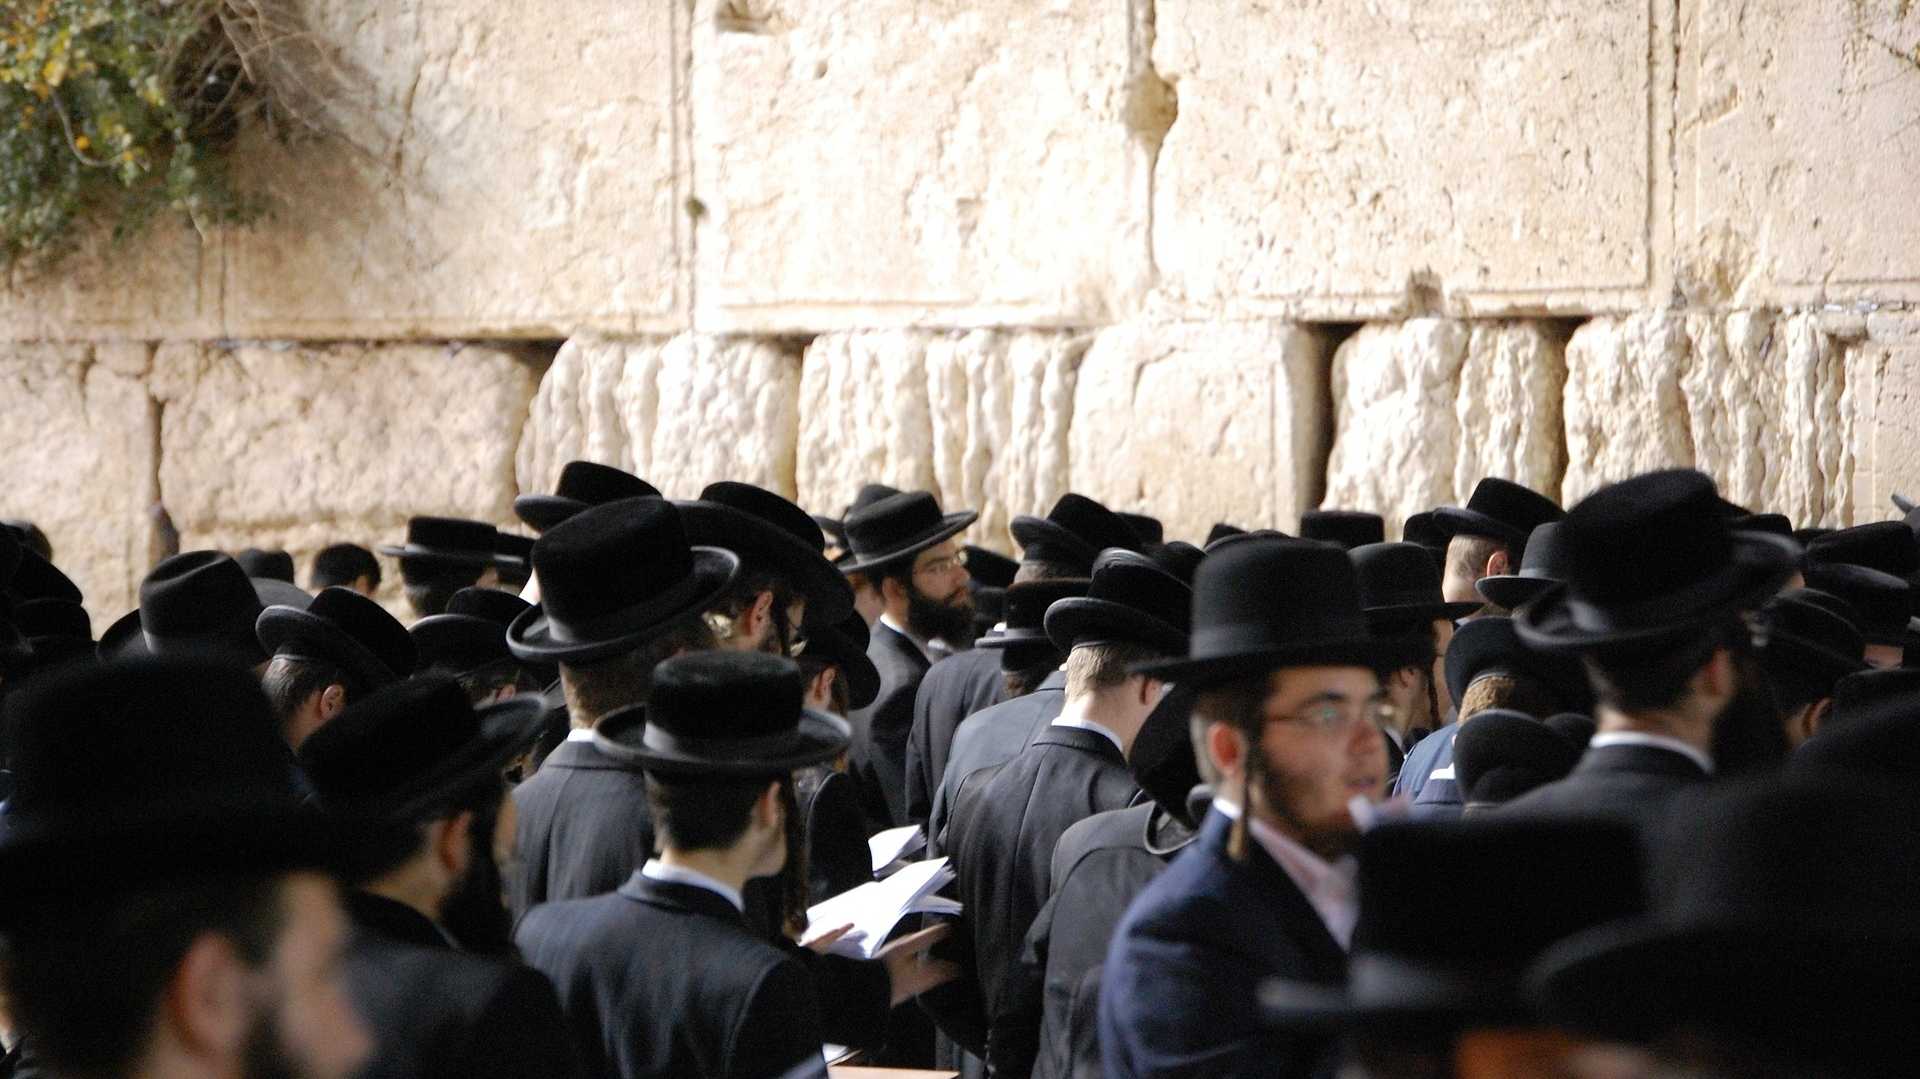 Klagemauer in Jerusalem - Symbol der jüdischen Geschichte und Einheit